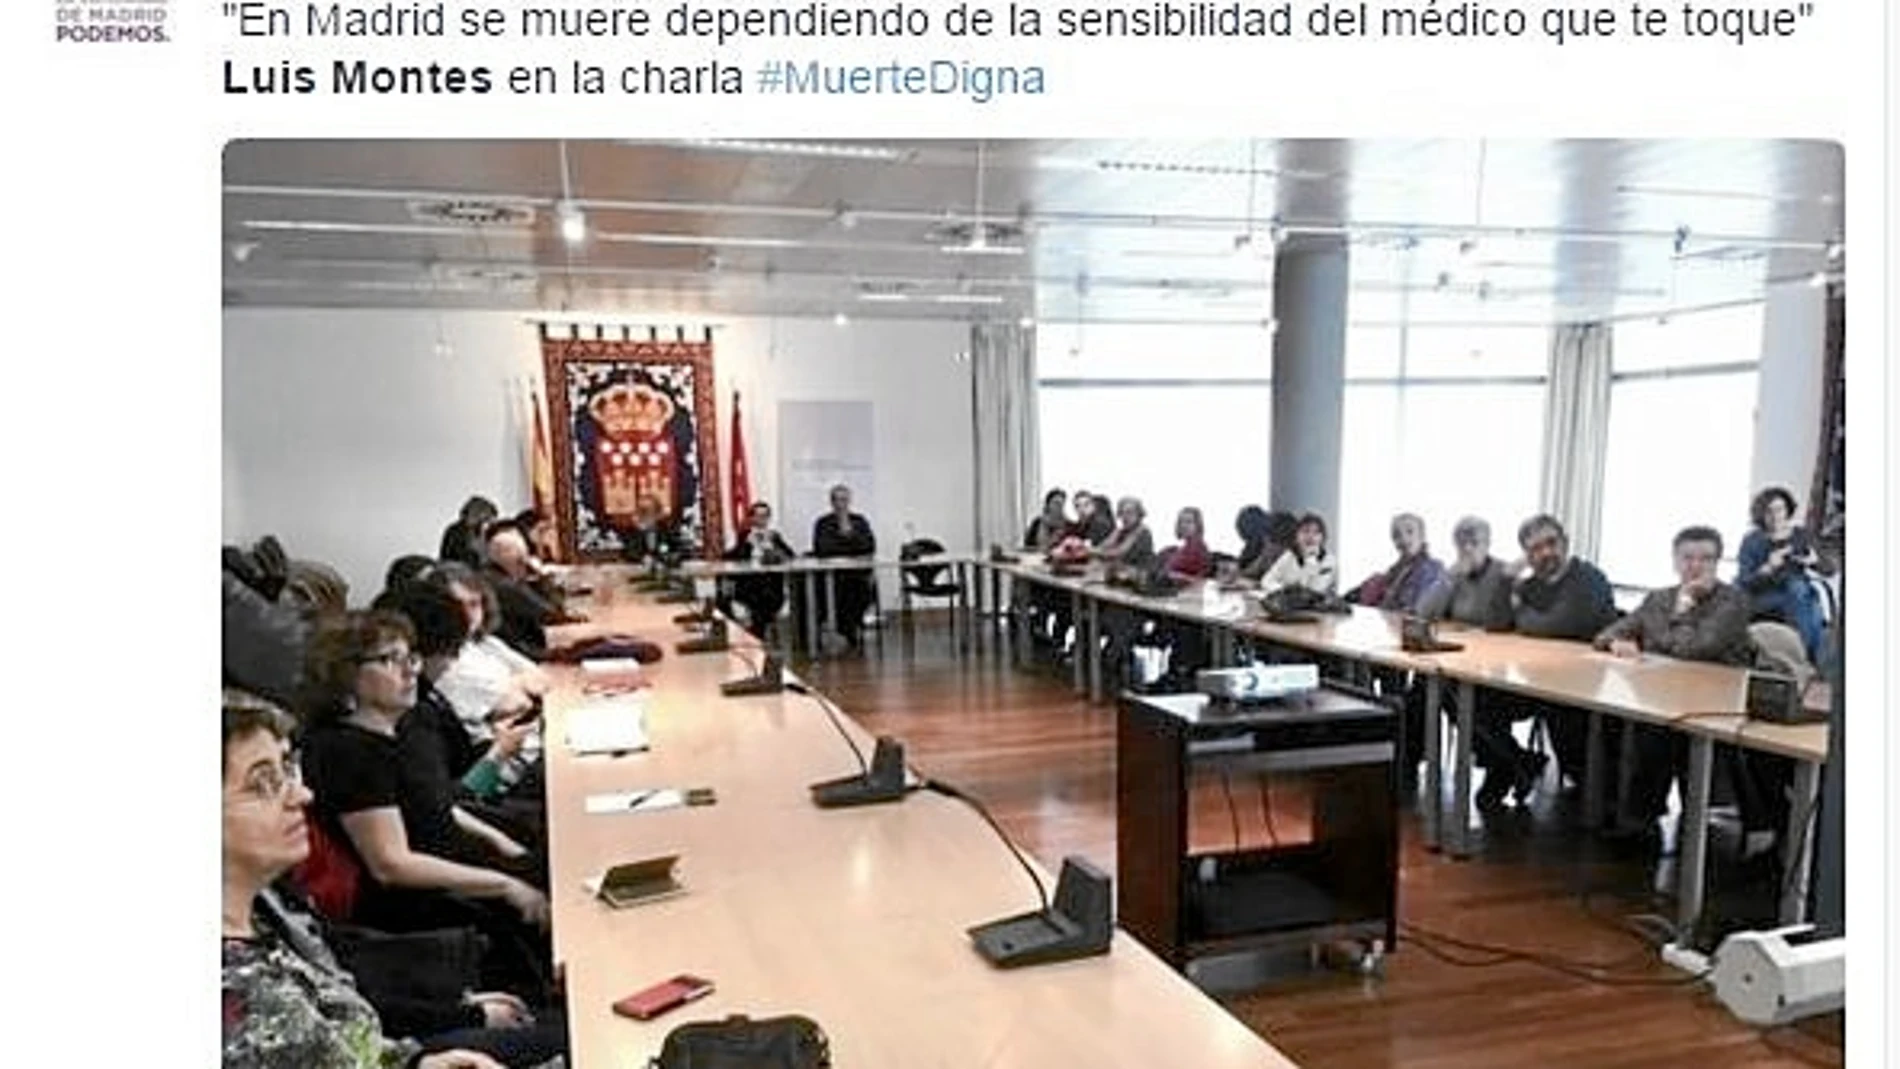 El doctor Montes participó ayer en una charla organizada por Podemos en la que defendió la sedación terminal